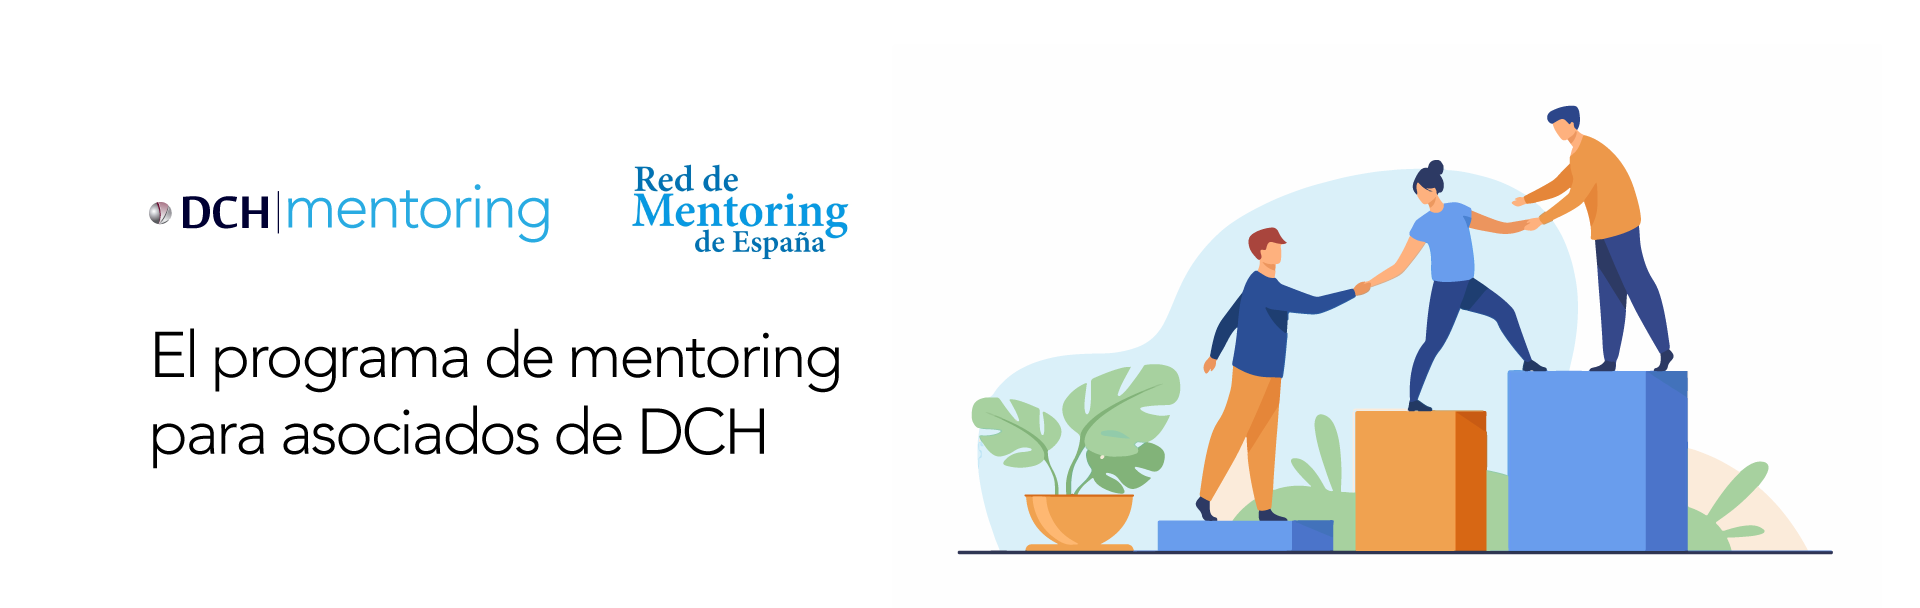 dch mentoring 1